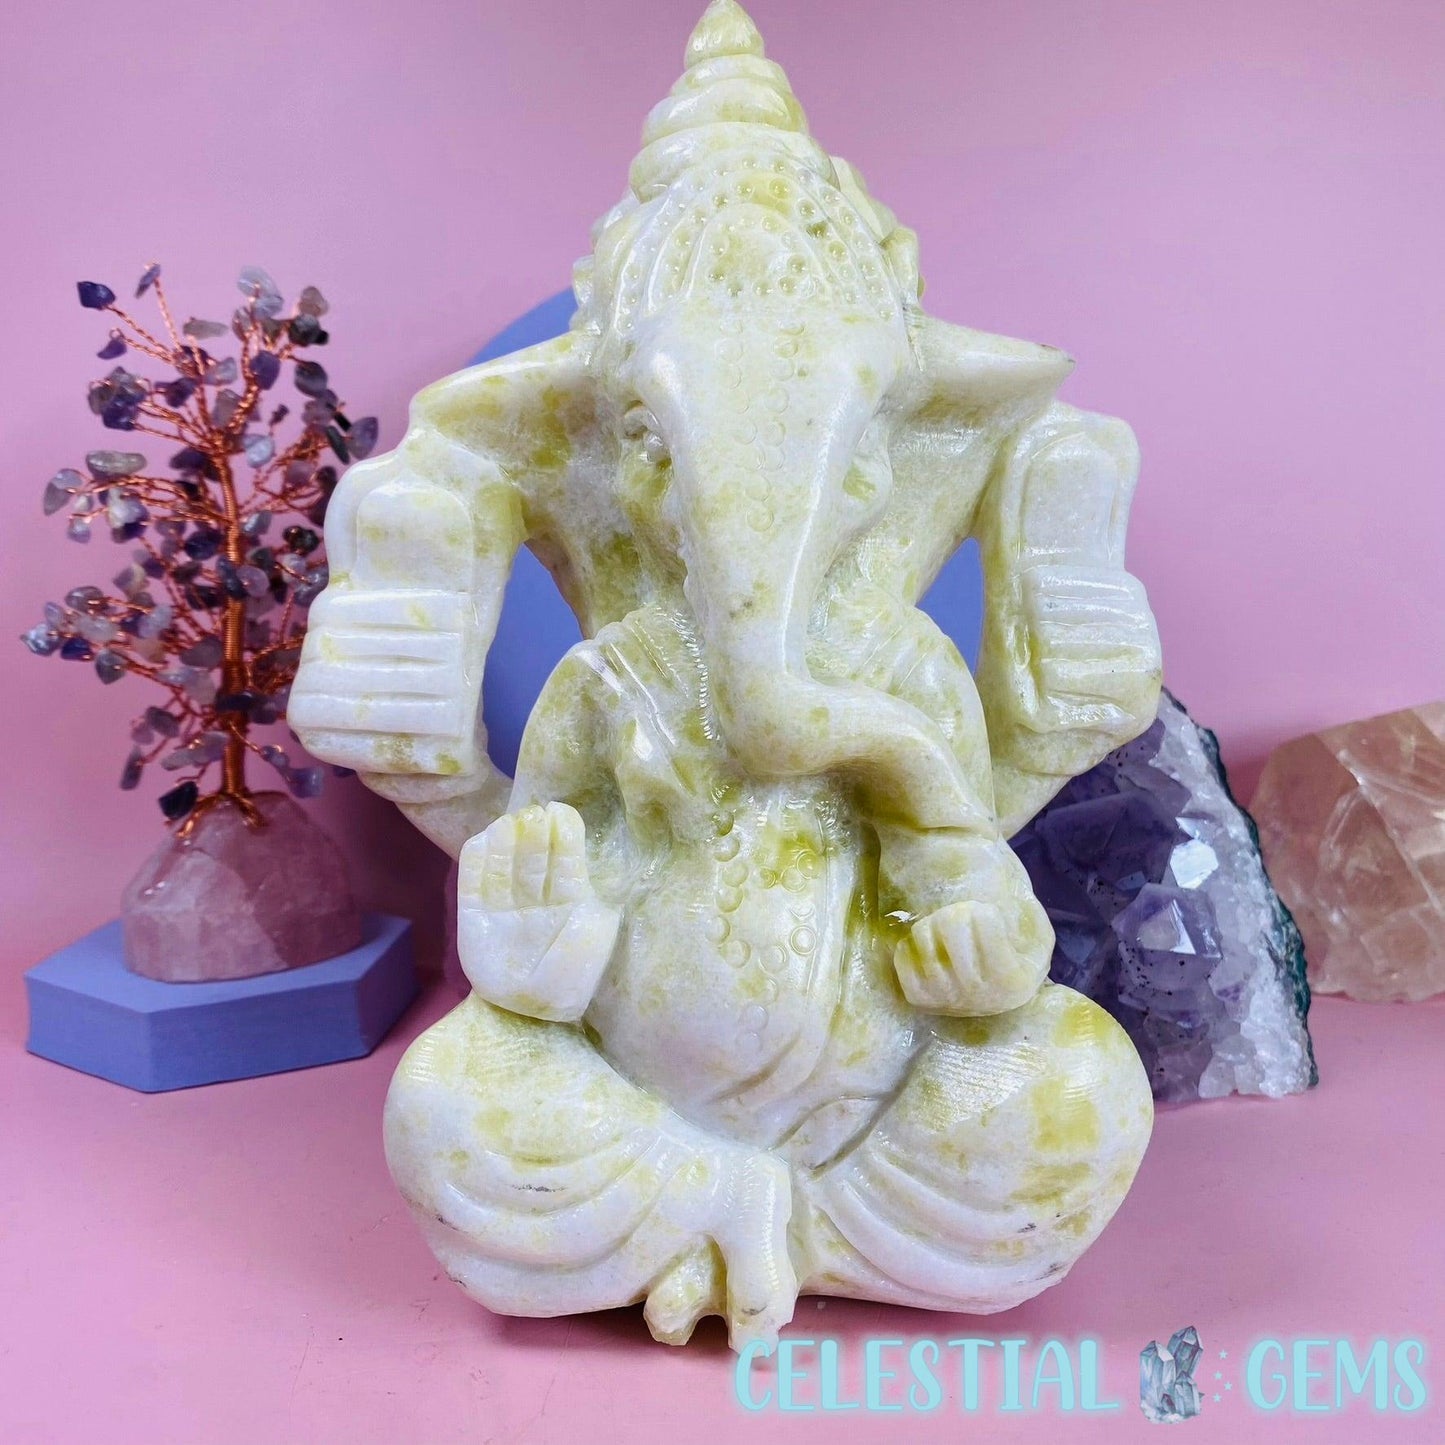 Lantian Jade Ganesha (Elephant God) Extra Large Carving